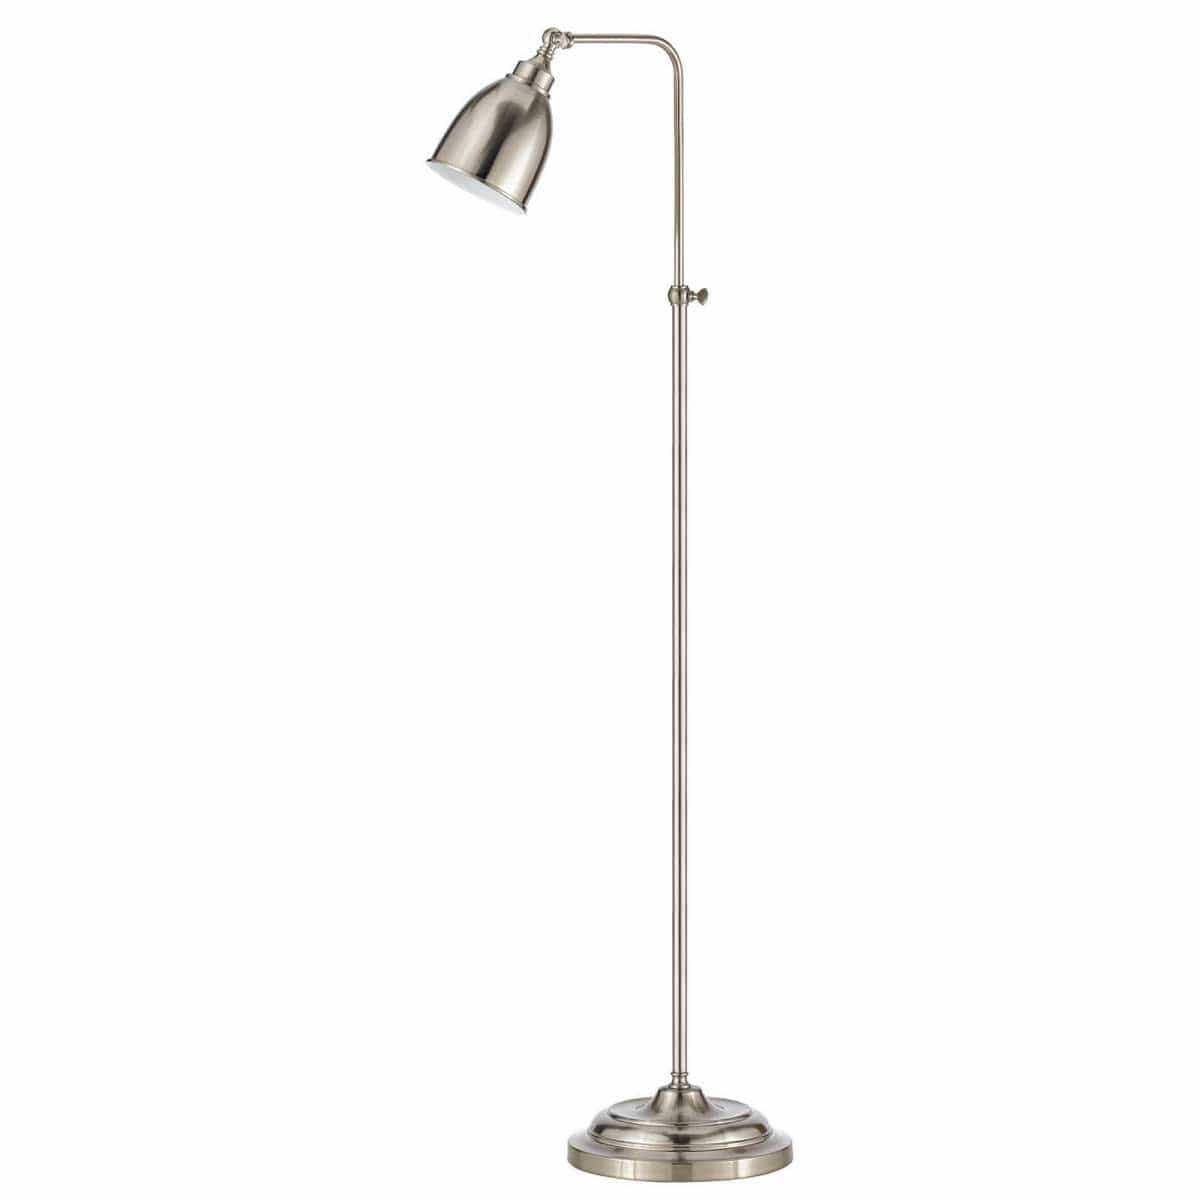 Benzara Metal Round 62" Floor Lamp With Adjustable Pole, Silver By Benzara Floor Lamps BM225099